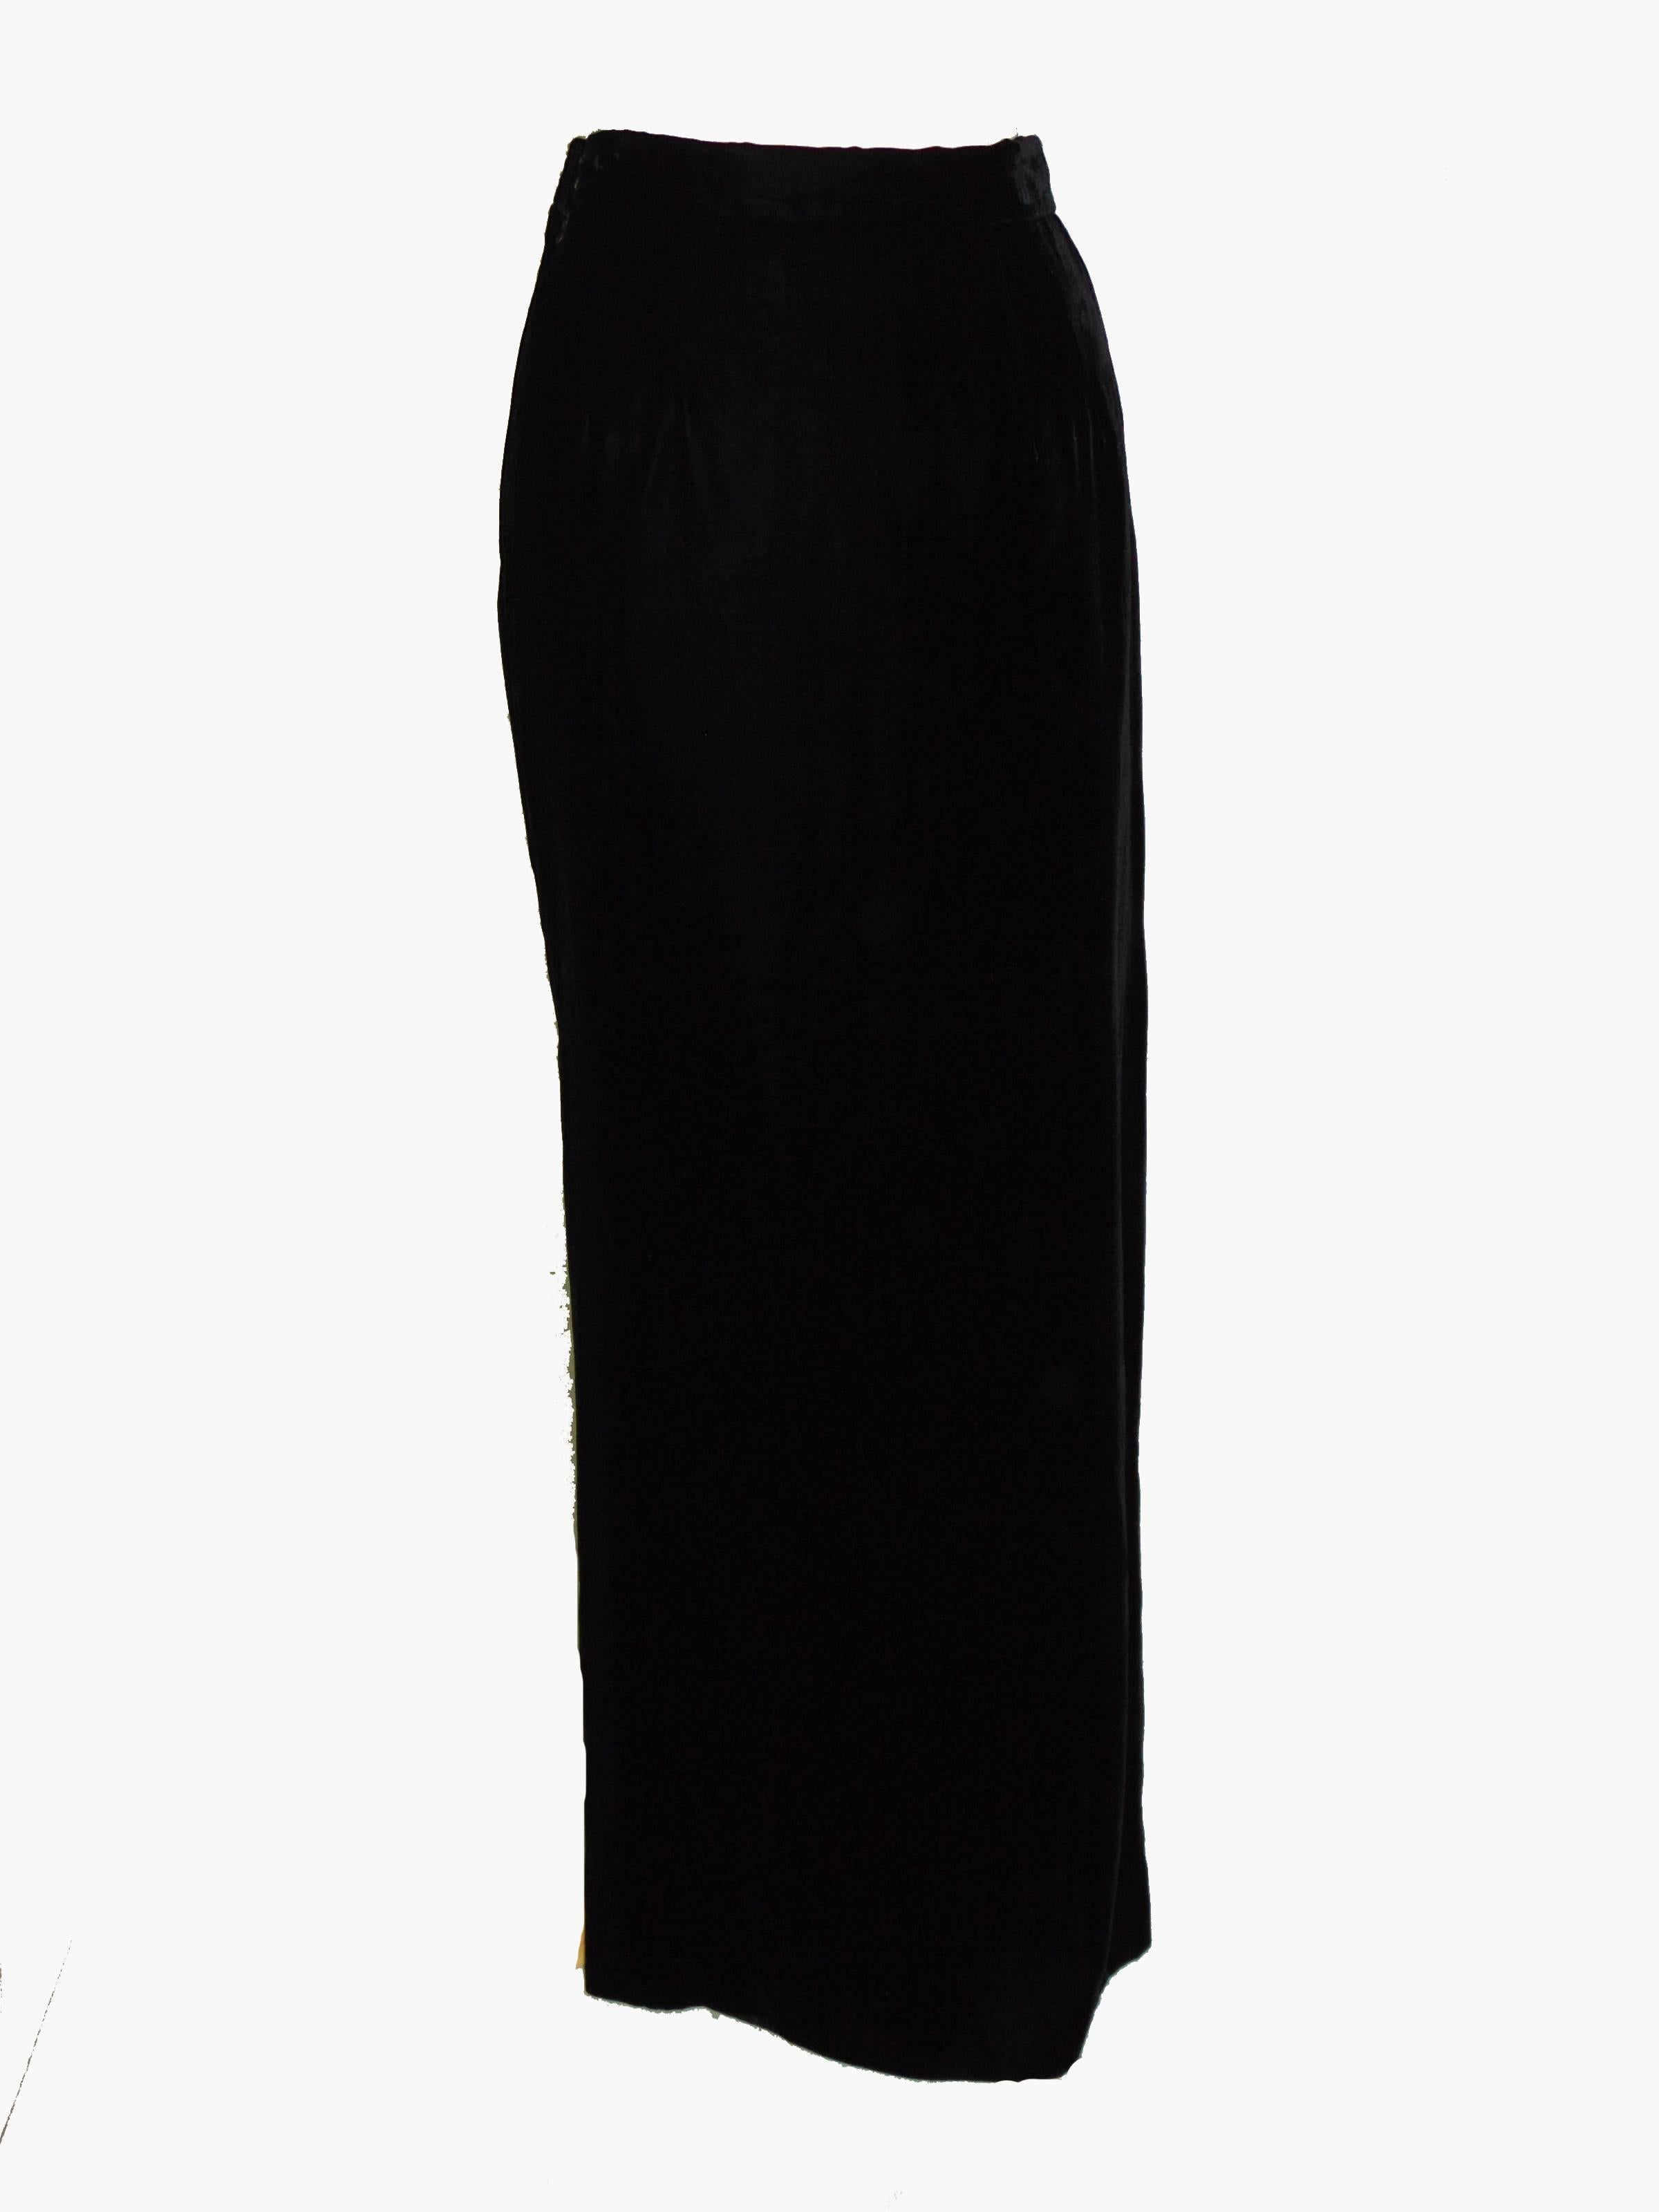 Women's Classic Oscar de la Renta Black Evening Skirt with Side Vent Size 12 1980s 